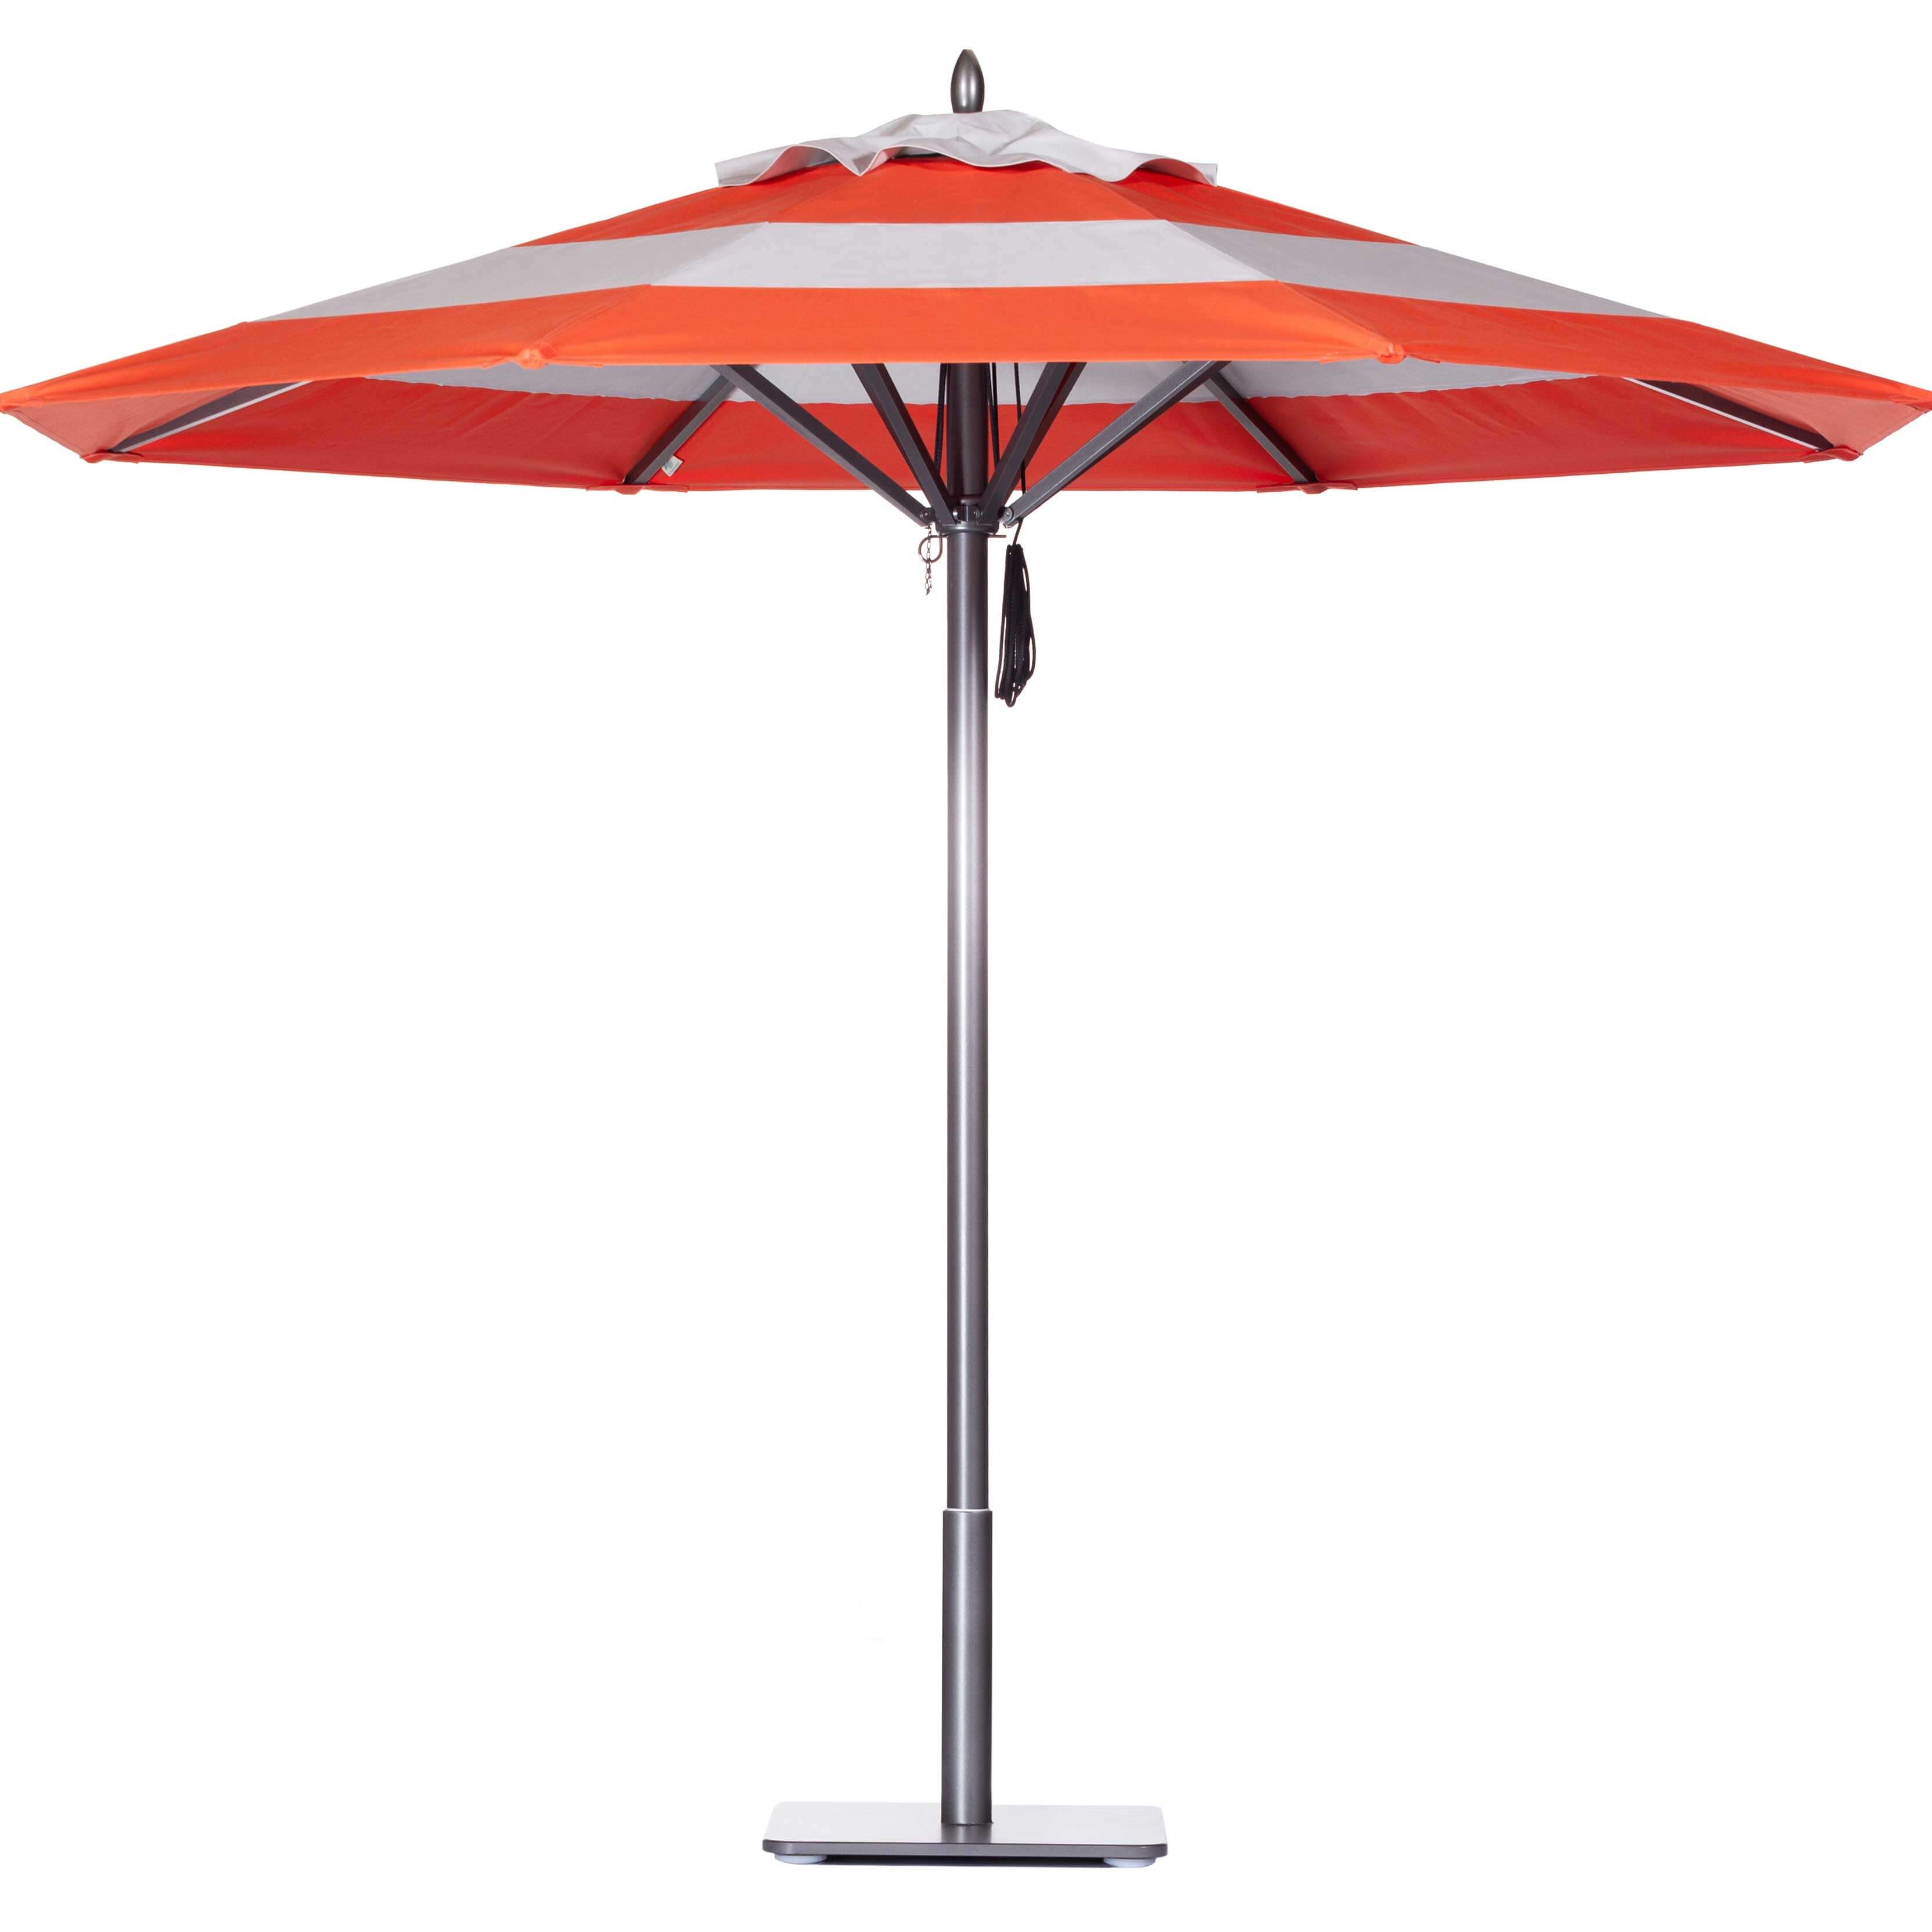 Mandarin Orange / Platinum Umbrella Image